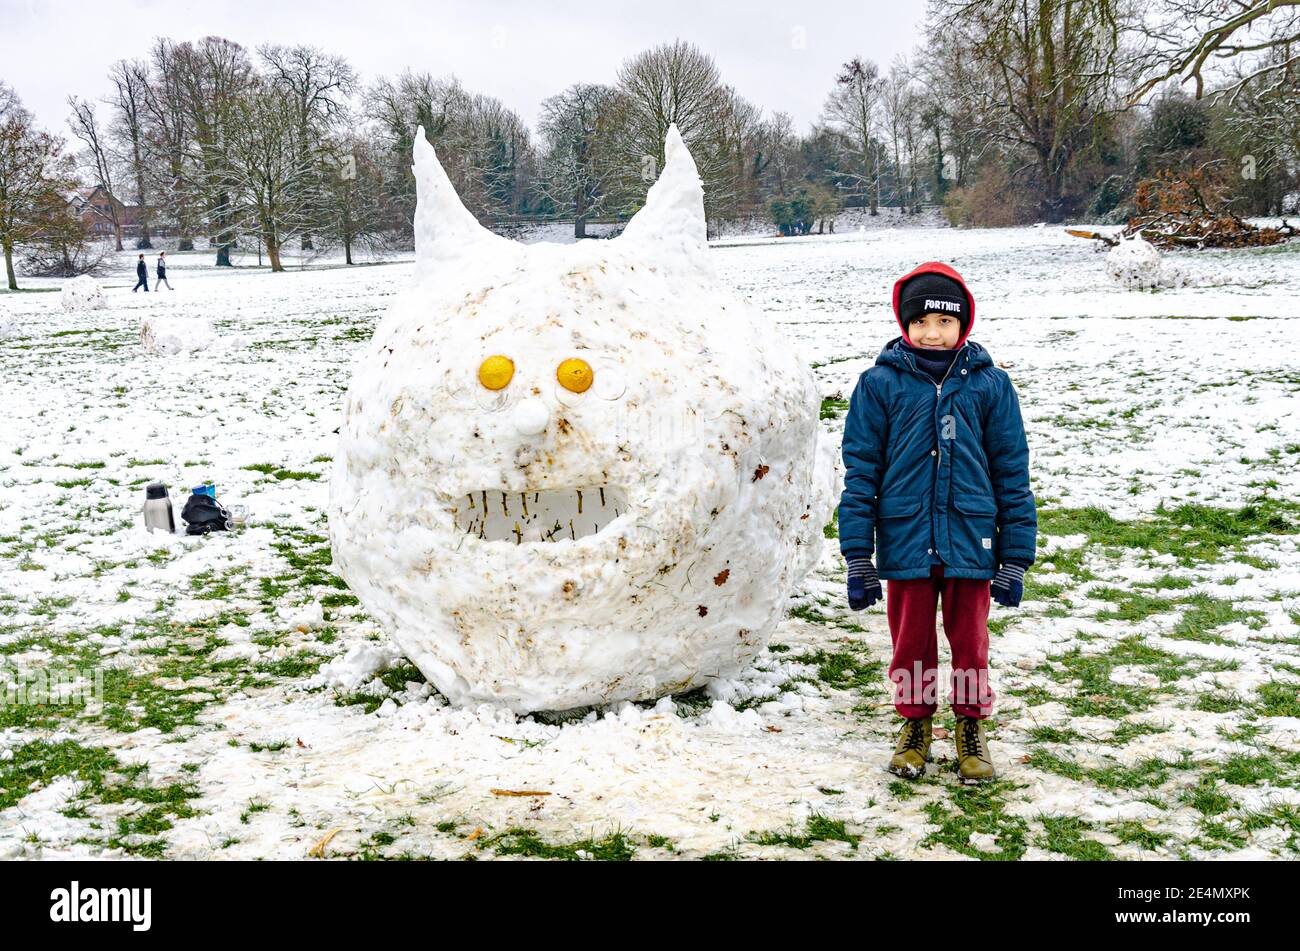 Un ragazzo si trova accanto a una creatura simile a un bruco scolpito dalla neve nel Prospect Park, Reading, Regno Unito, nel bel mezzo dell'inverno. Foto Stock